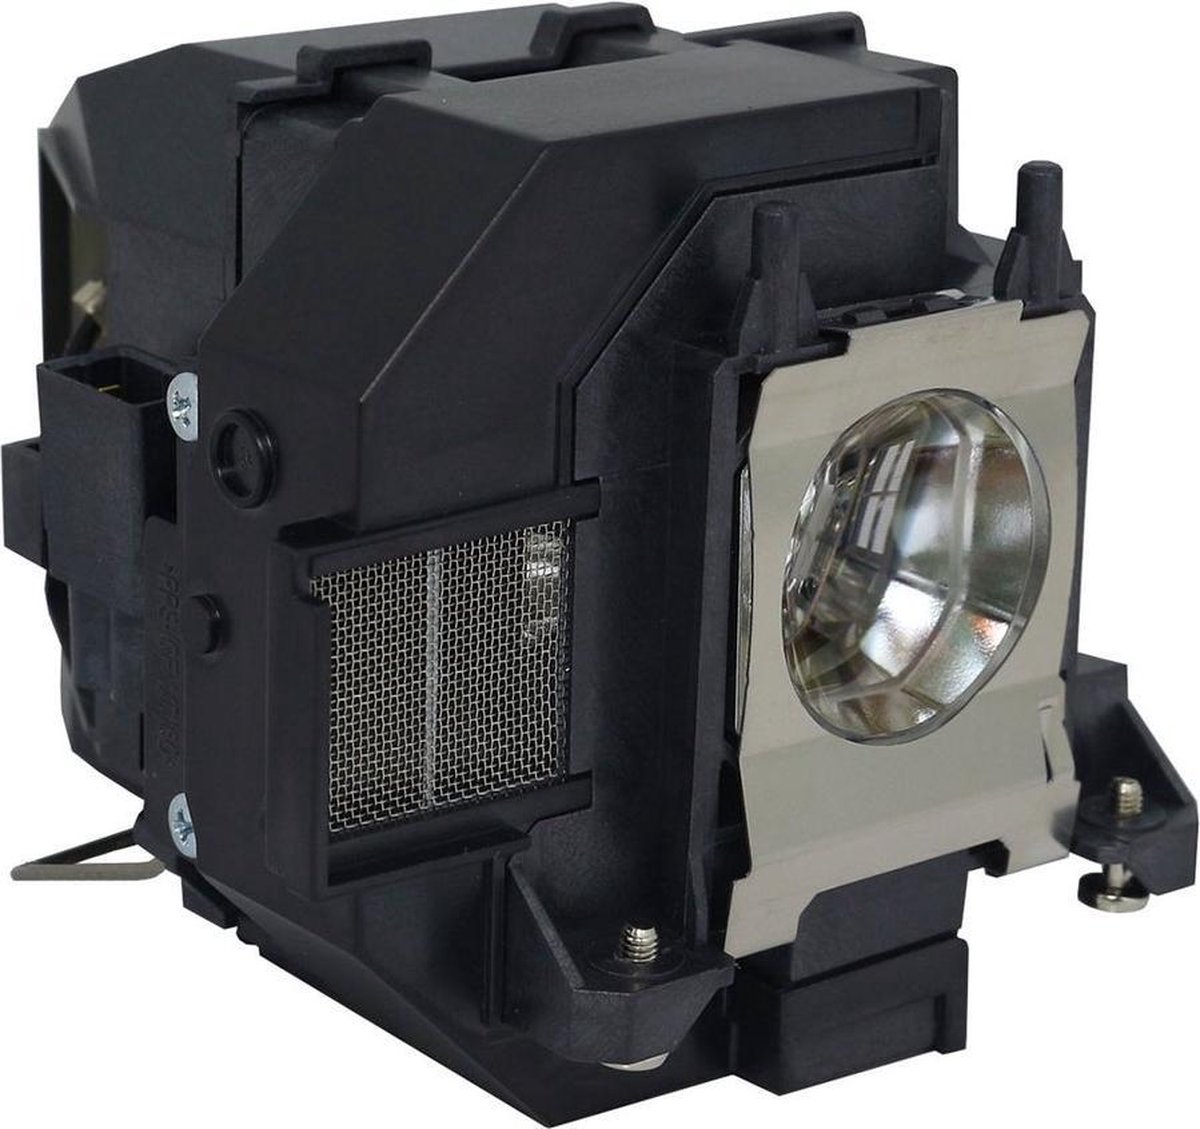 Beamerlamp geschikt voor de EPSON H820C beamer, lamp code LP95 / V13H010L95. Bevat originele NSHA lamp, prestaties gelijk aan origineel.